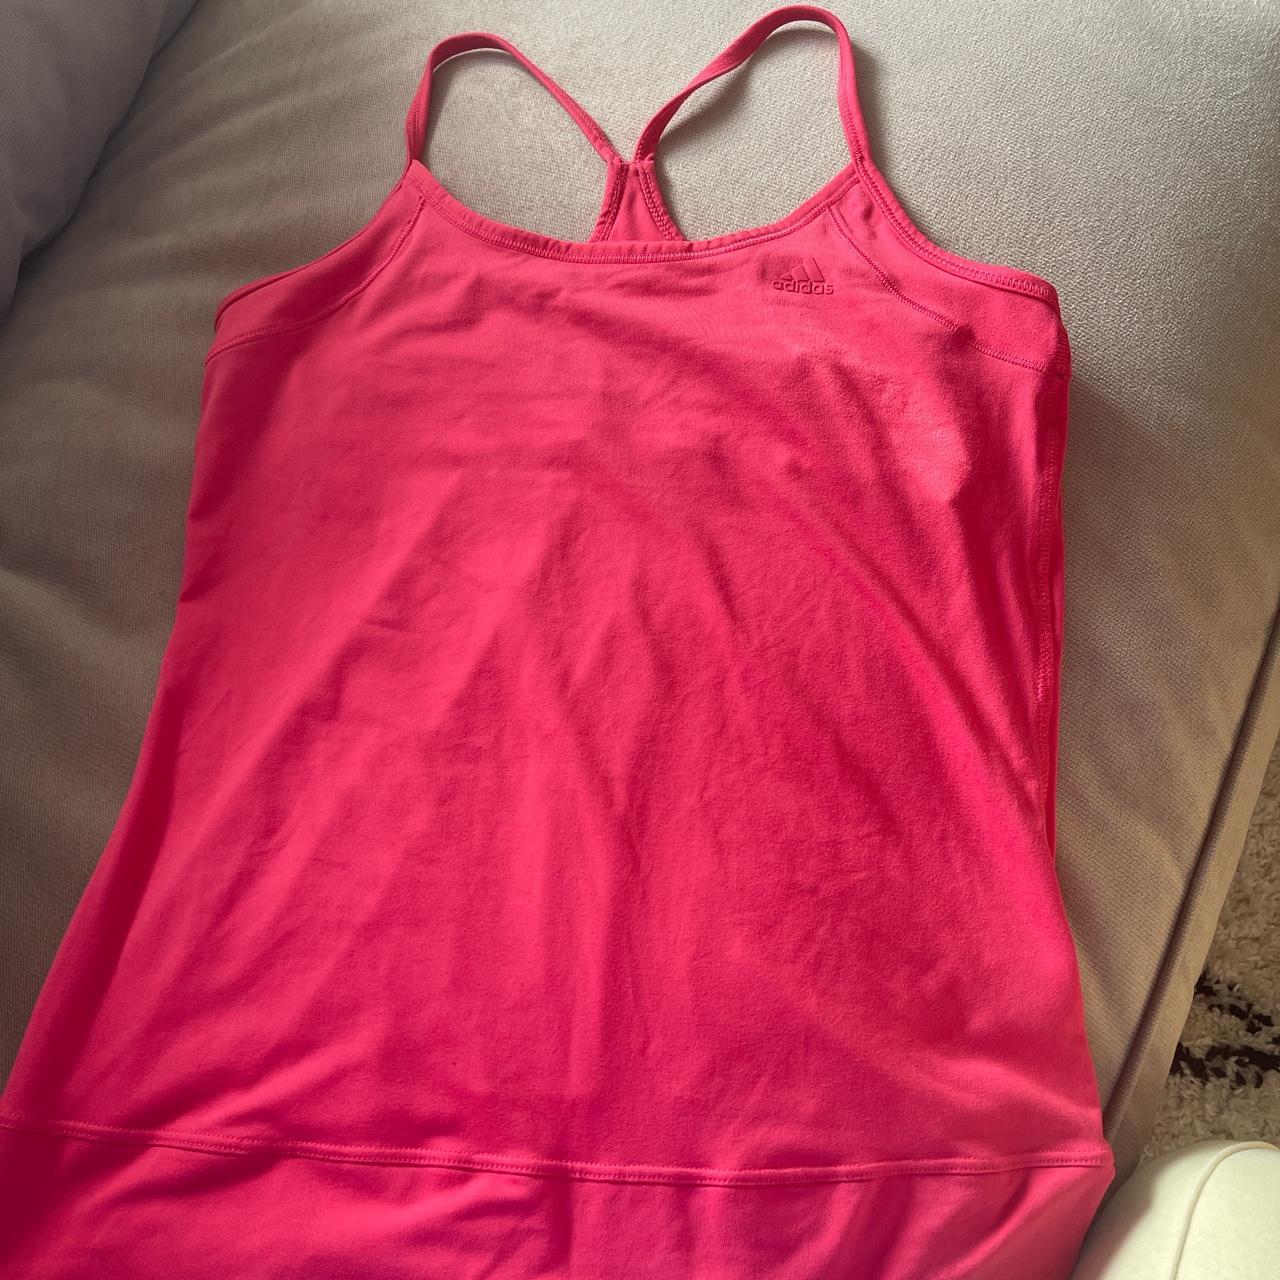 Adidas pink gym top with under bra, size 12 never worn! - Depop